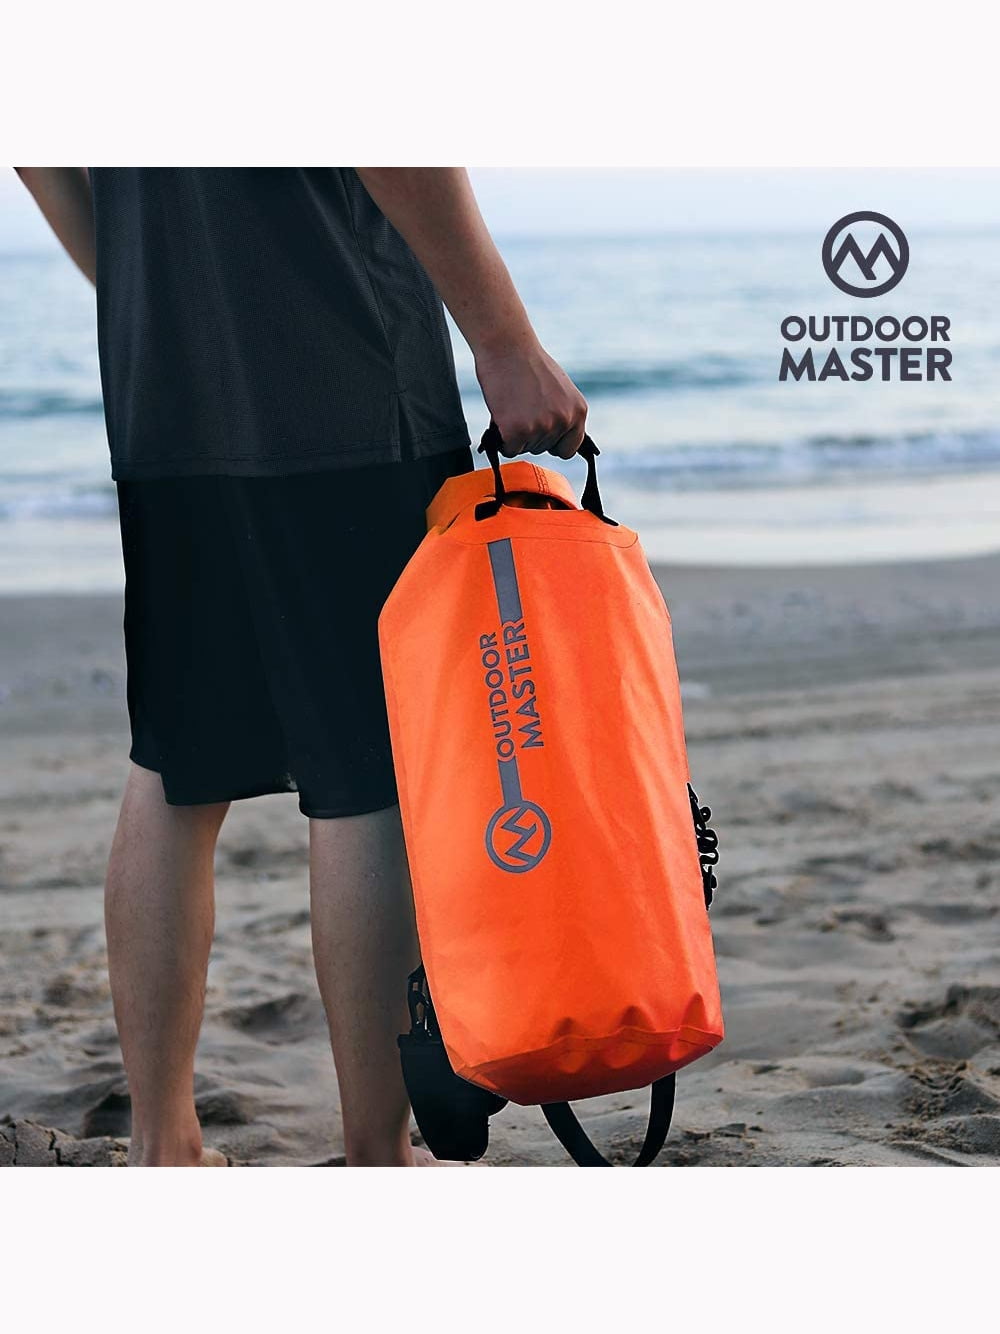 10 L OutdoorMaster Dry Bag Seal Waterproof Floating Roll Top Dry Sack Teal 